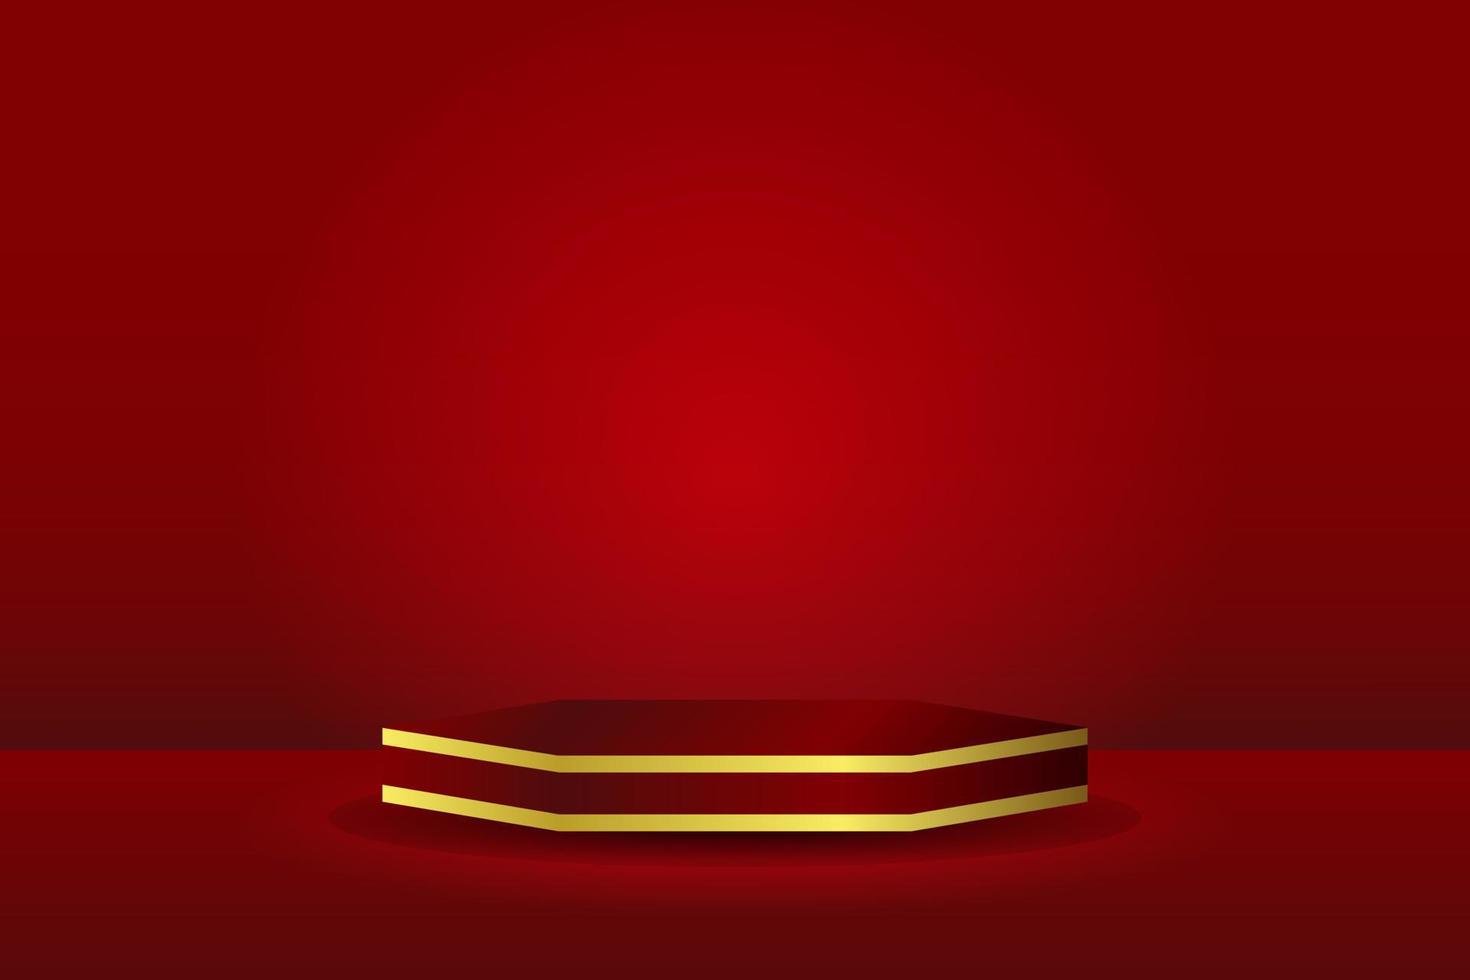 pedestal o podio hexagonal rojo 3d realista abstracto. escena mínima roja oscura para la presentación de productos. diseño de plataforma geométrica de representación vectorial vector